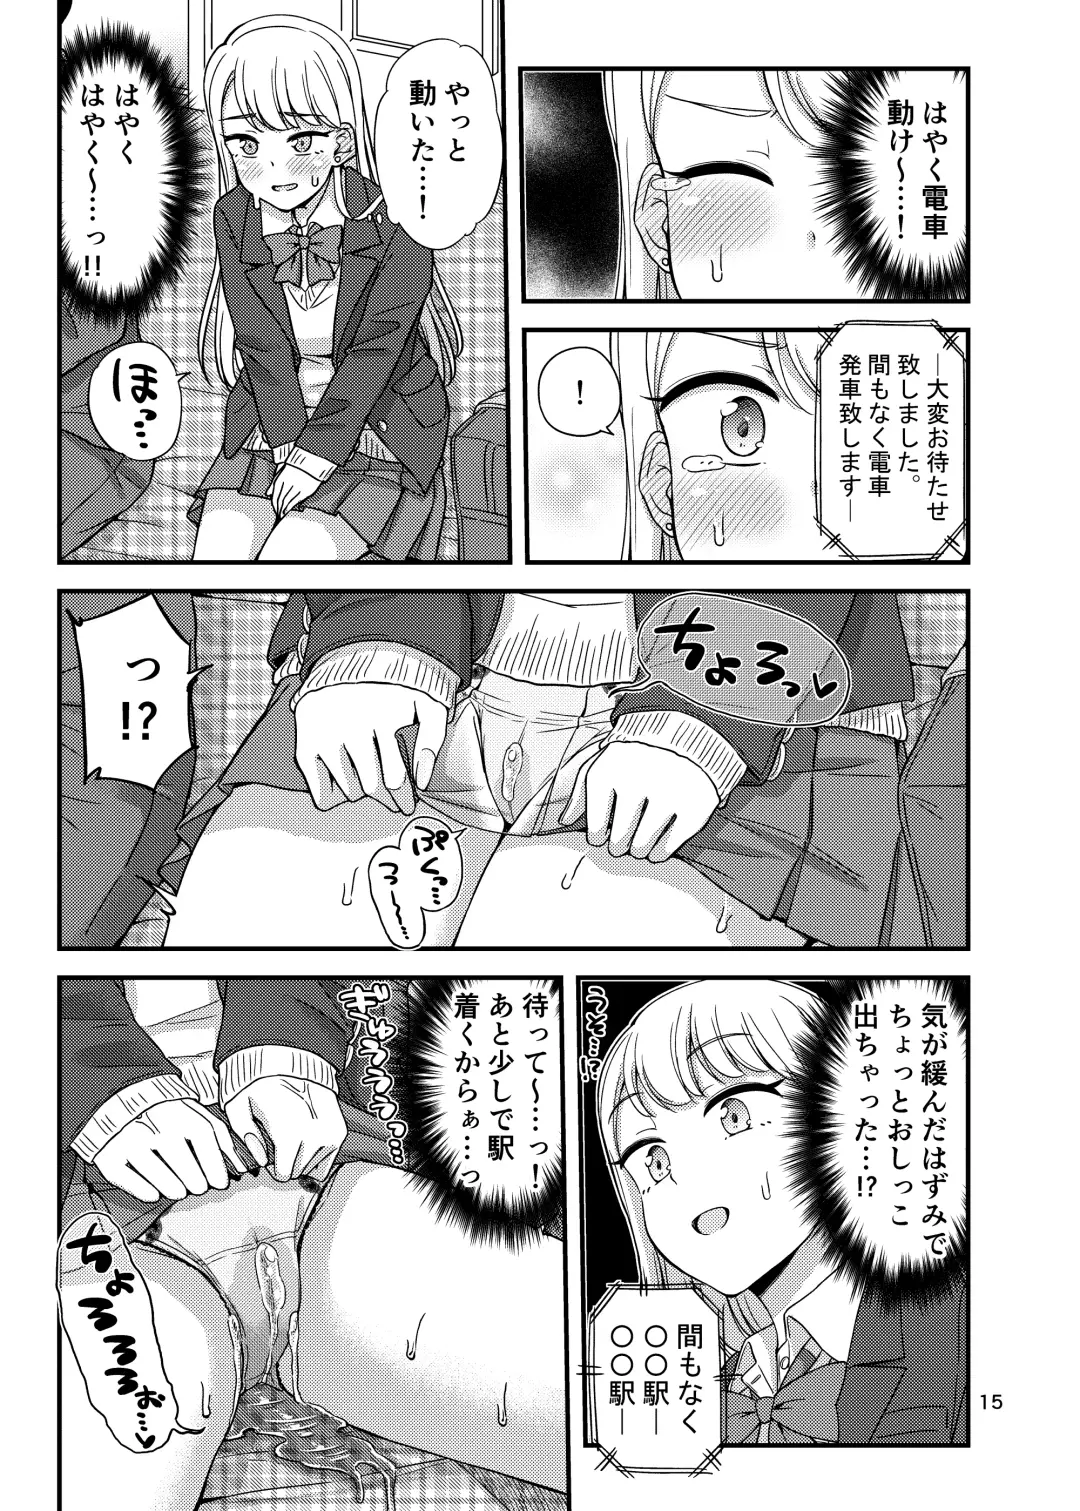 [Tsuttsu] Oshikko Hyakkei 6 - Urination Scenes #6 Fhentai.net - Page 16